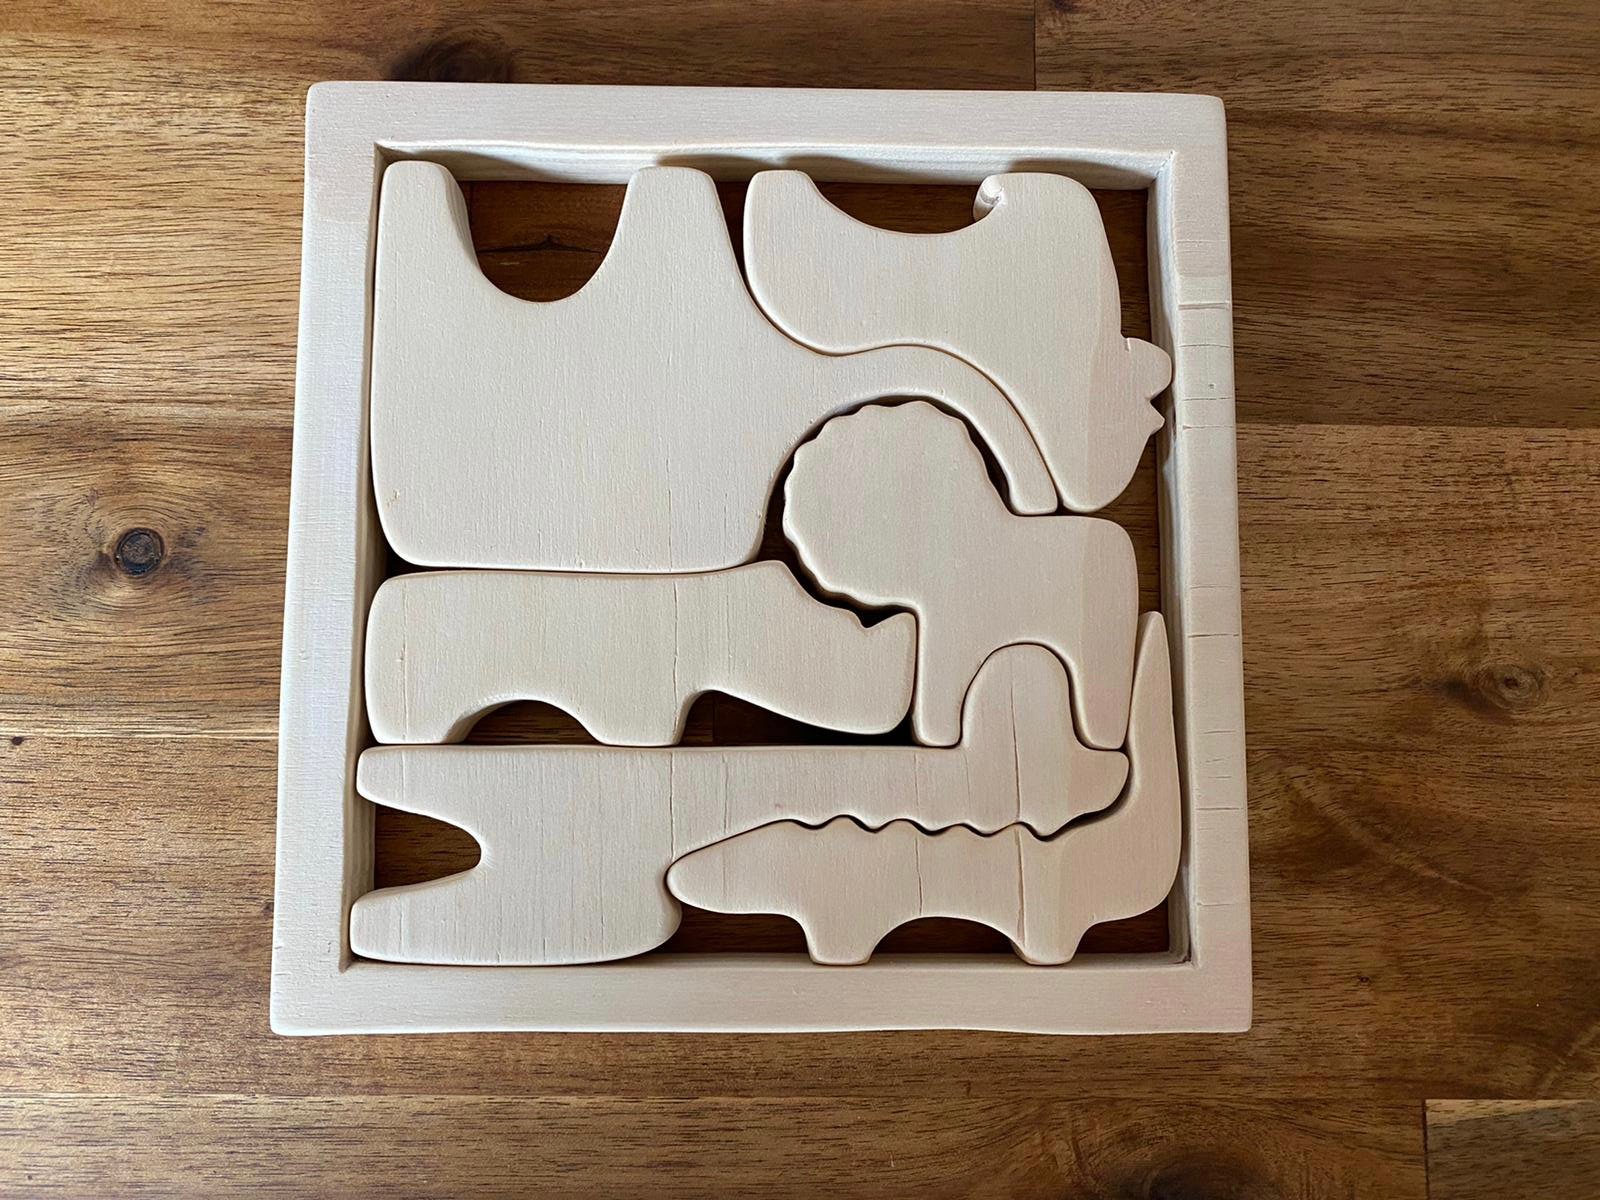 Comment faire des puzzles en bois ?